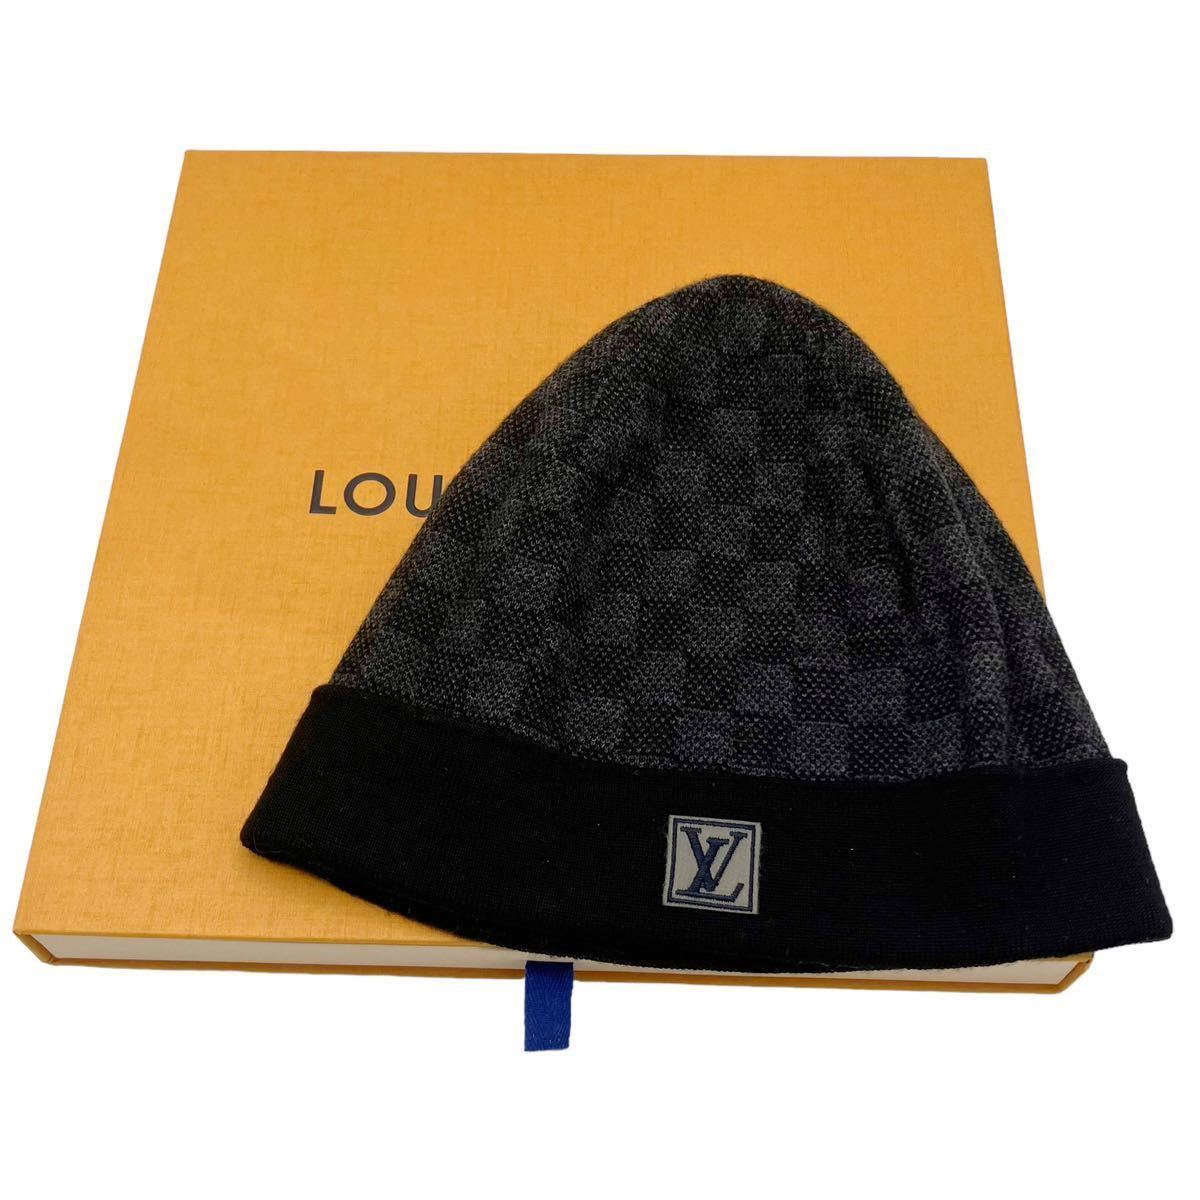 【美品】ルイヴィトン LOUIS VUITTON M70009 ダミエ ボネ プティ ビーニー ニットキャップ 帽子 ニット帽 ブラック